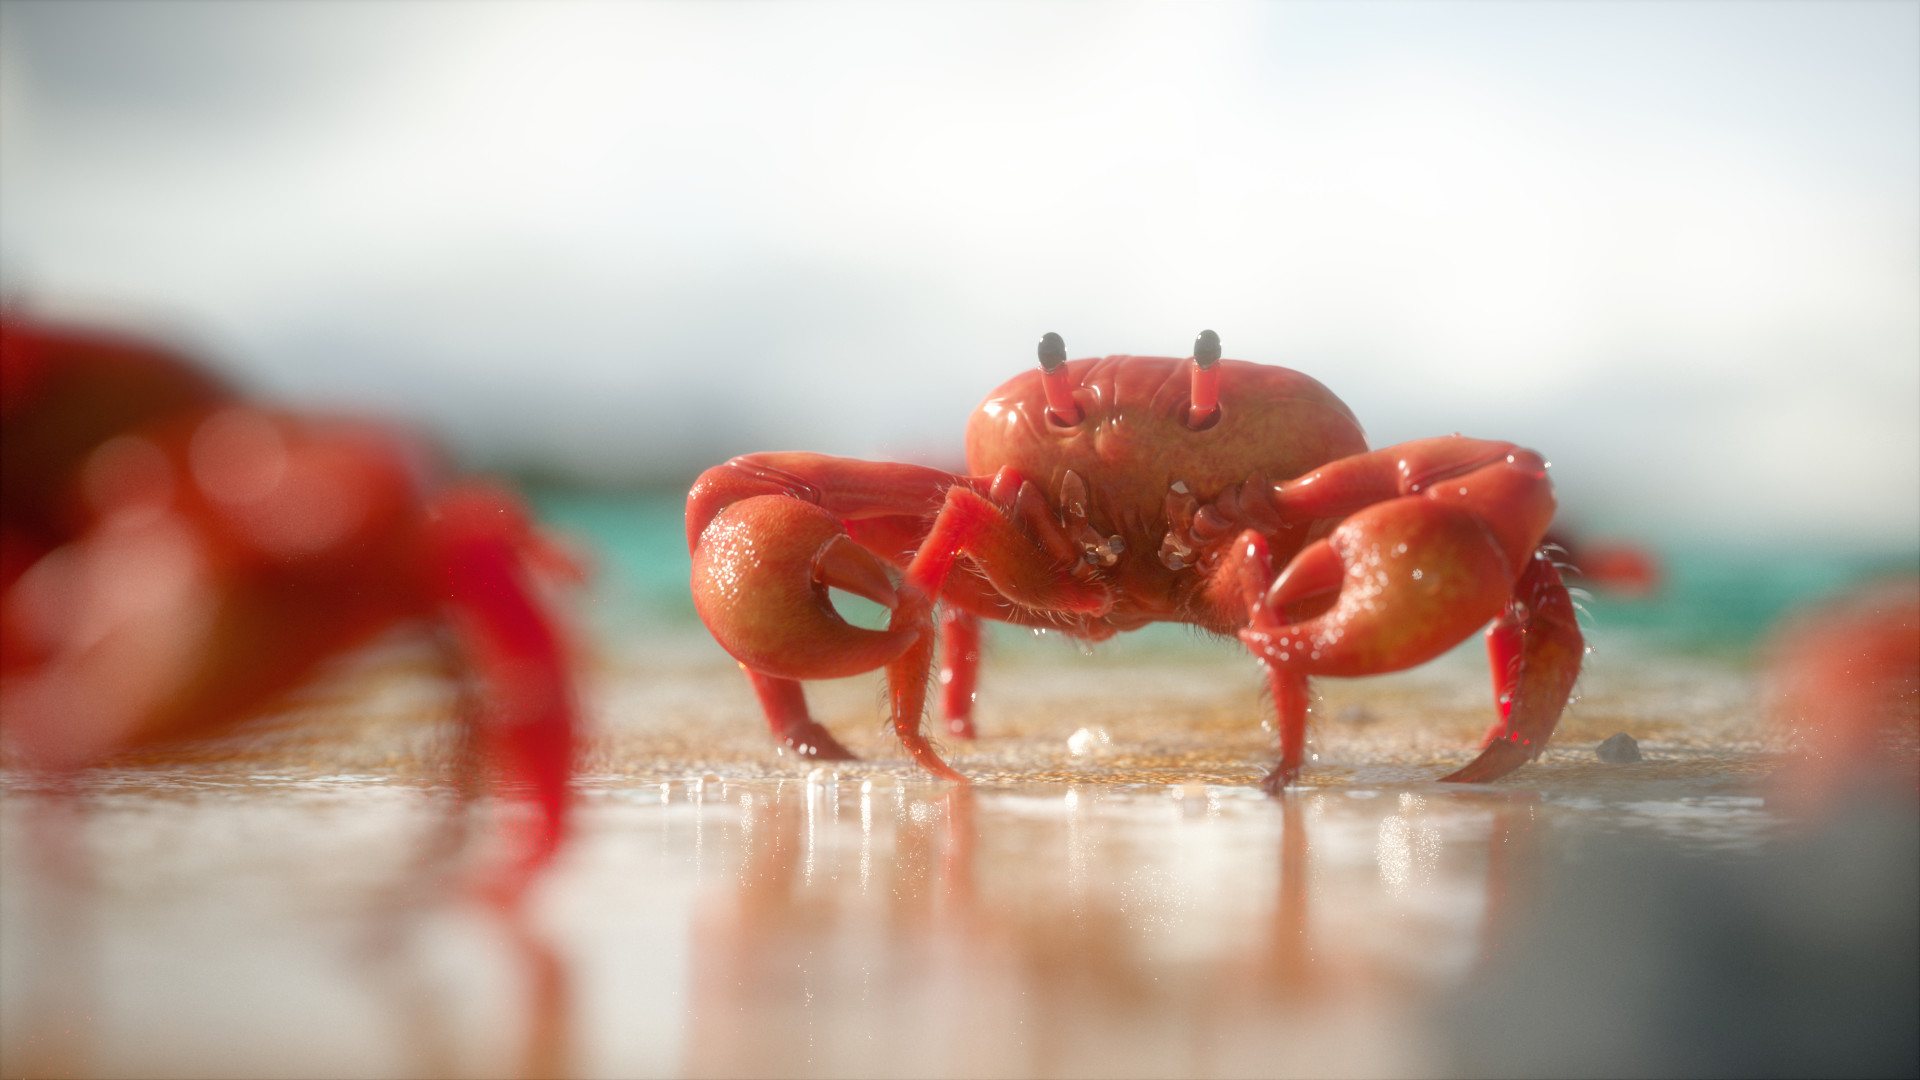 fellipe-beckman-render-crab.jpg